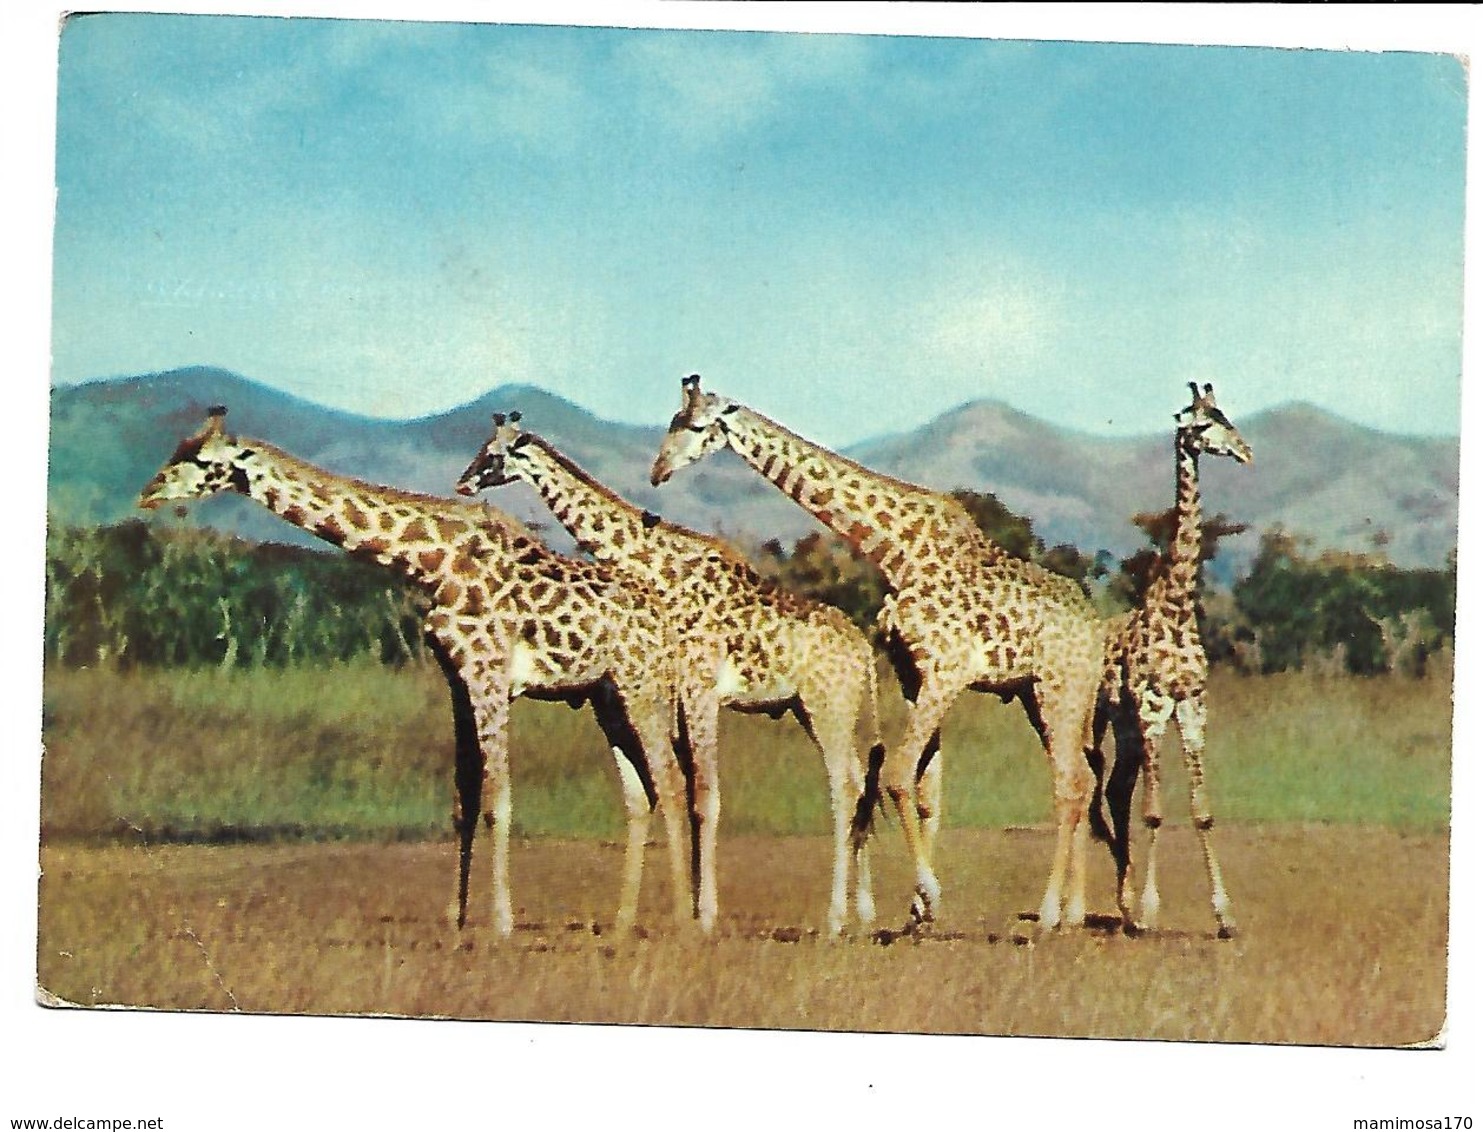 Afrique-BASUTOLAND-Une Vue Des Giraffes-PUB.Colection AMORA-TIMBRE-Obliteration-1956 - Unclassified